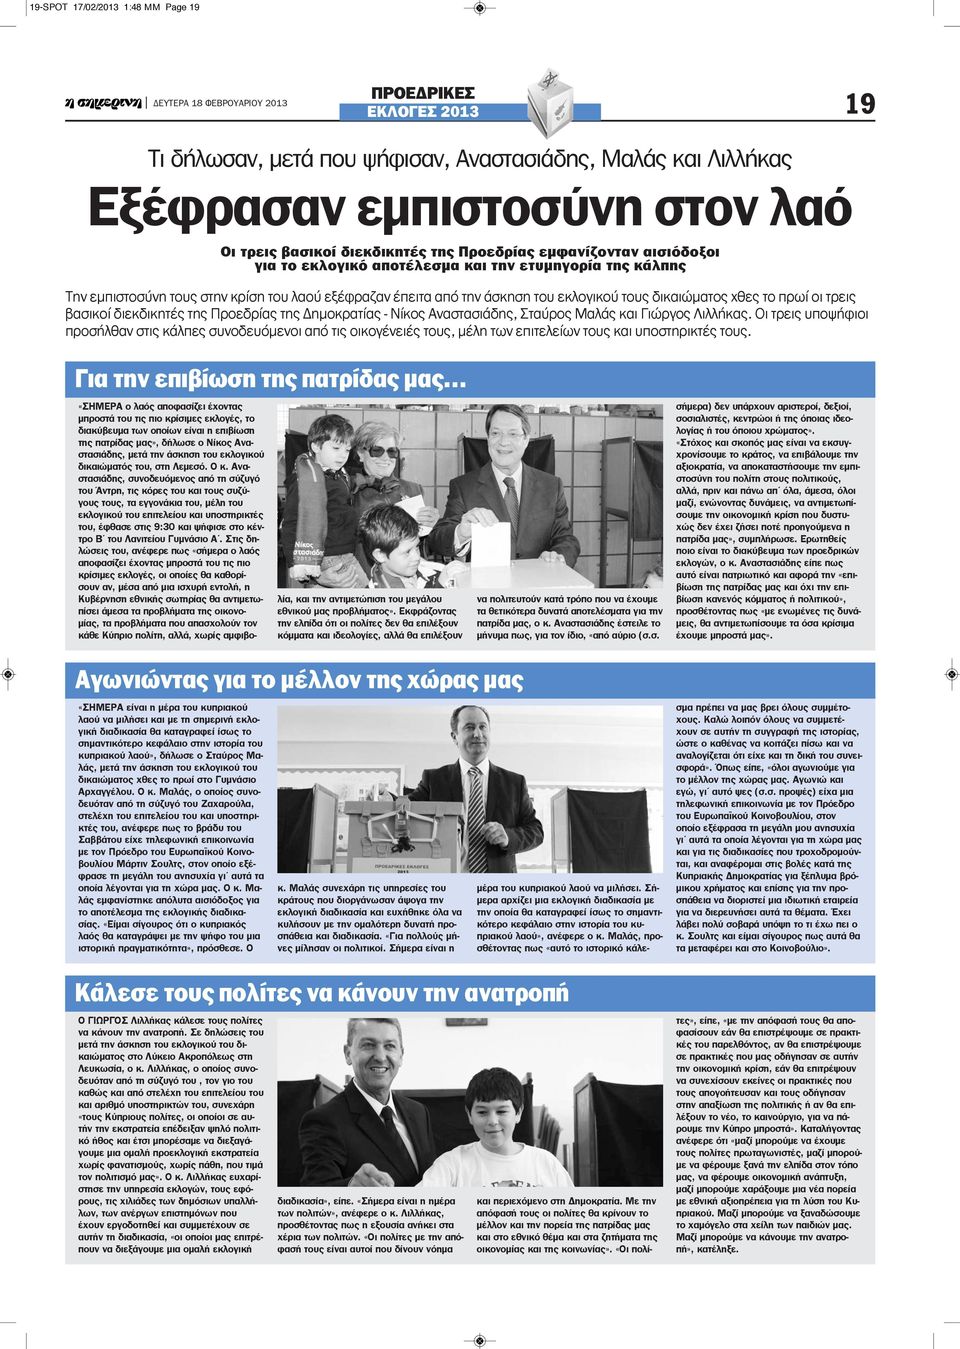 οι τρεις βασικοί διεκδικητές της Προεδρίας της Δημοκρατίας - Νίκος Αναστασιάδης, Σταύρος Μαλάς και Γιώργος Λιλλήκας.